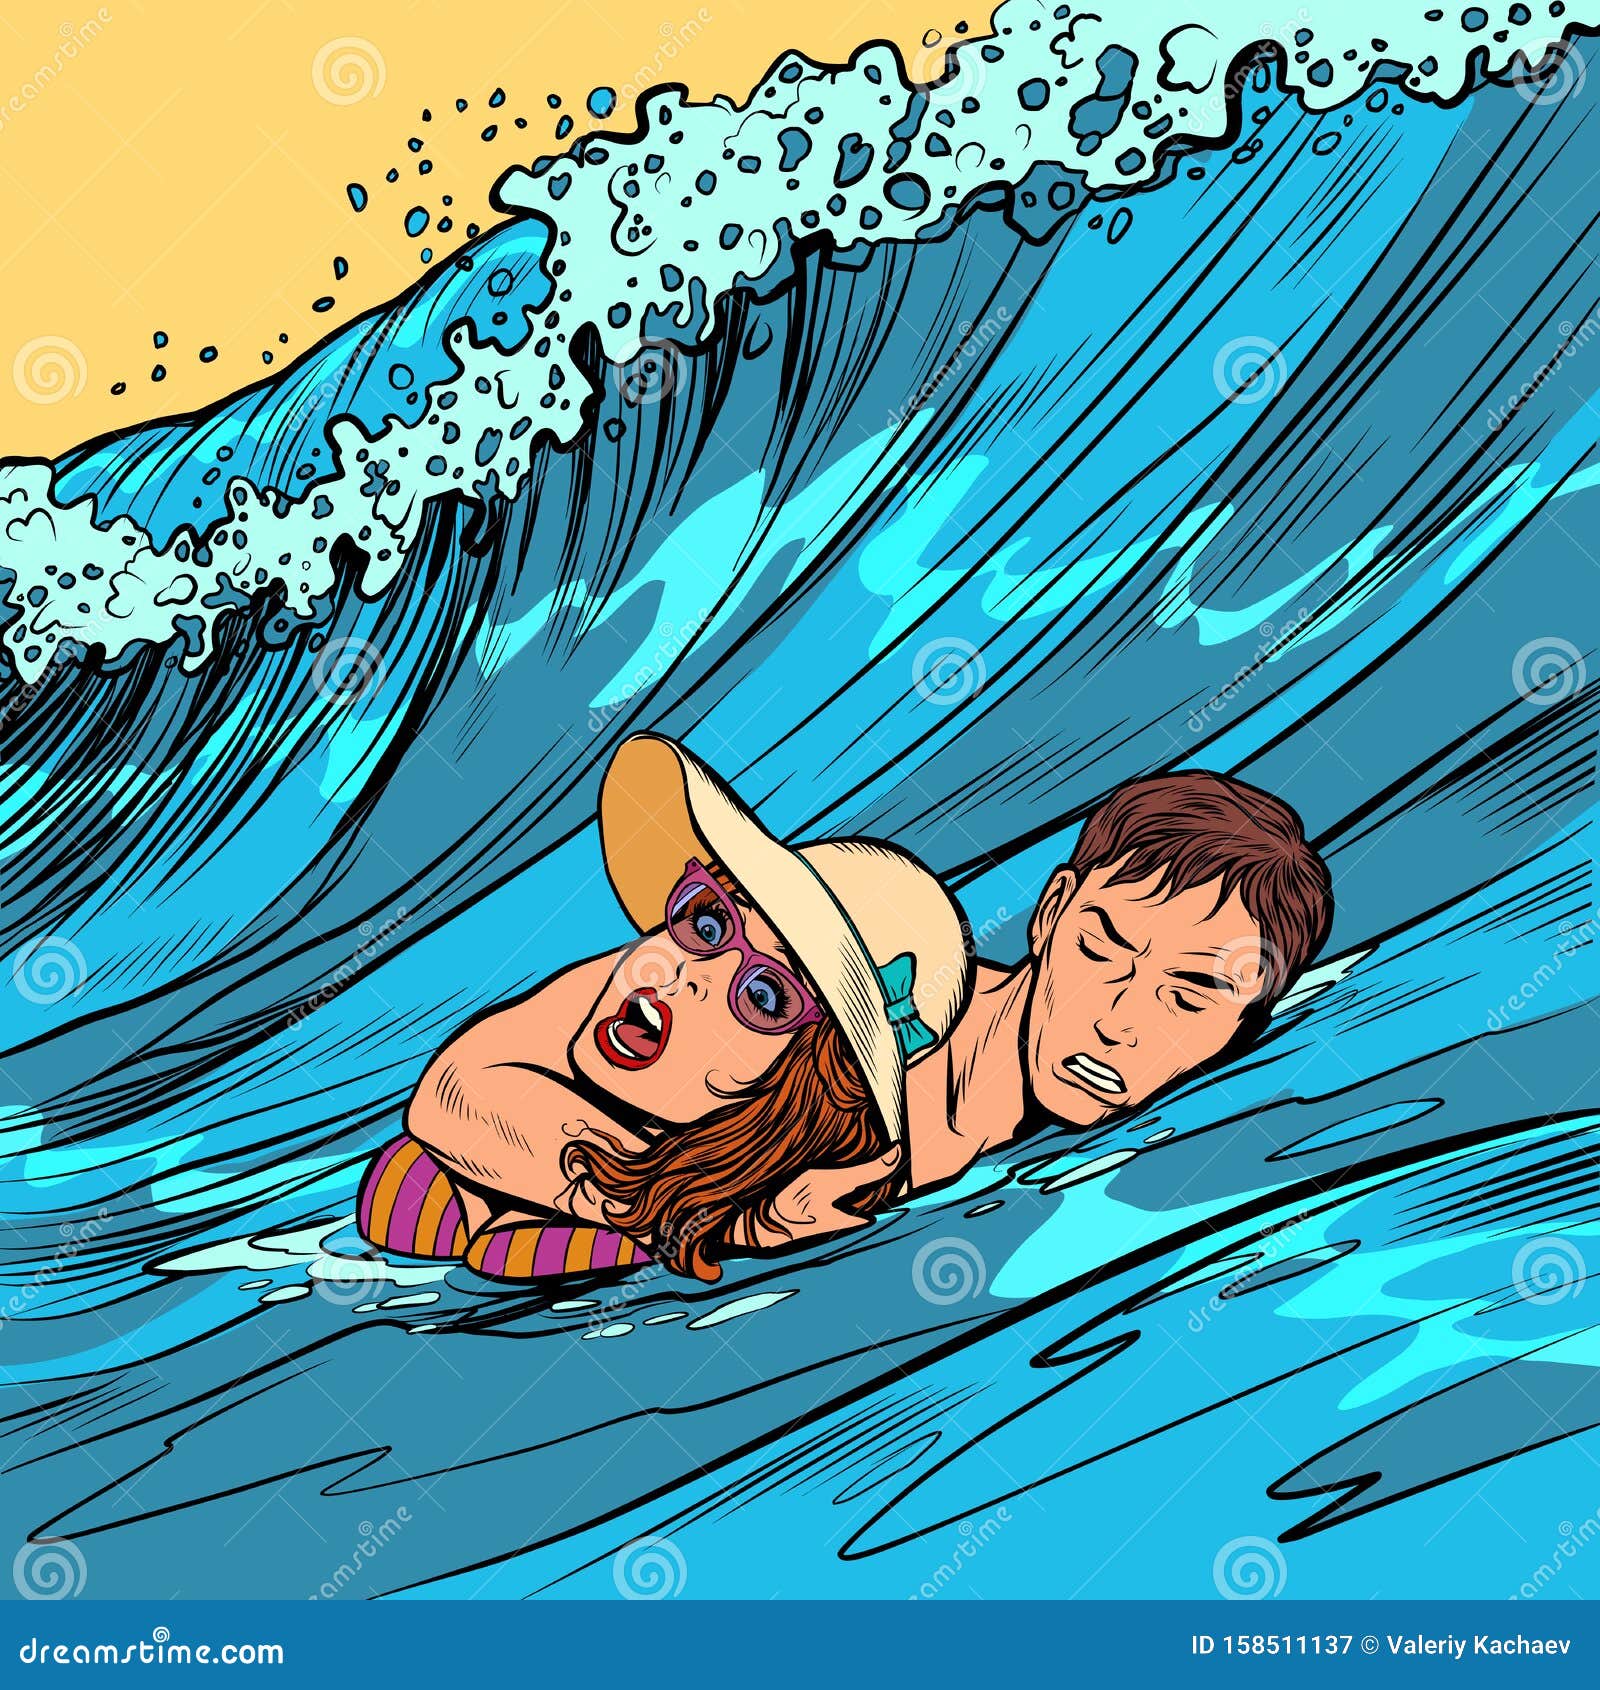 💌 Drowning Girl Pop Art Roy Lichtenstein 2022 11 21 